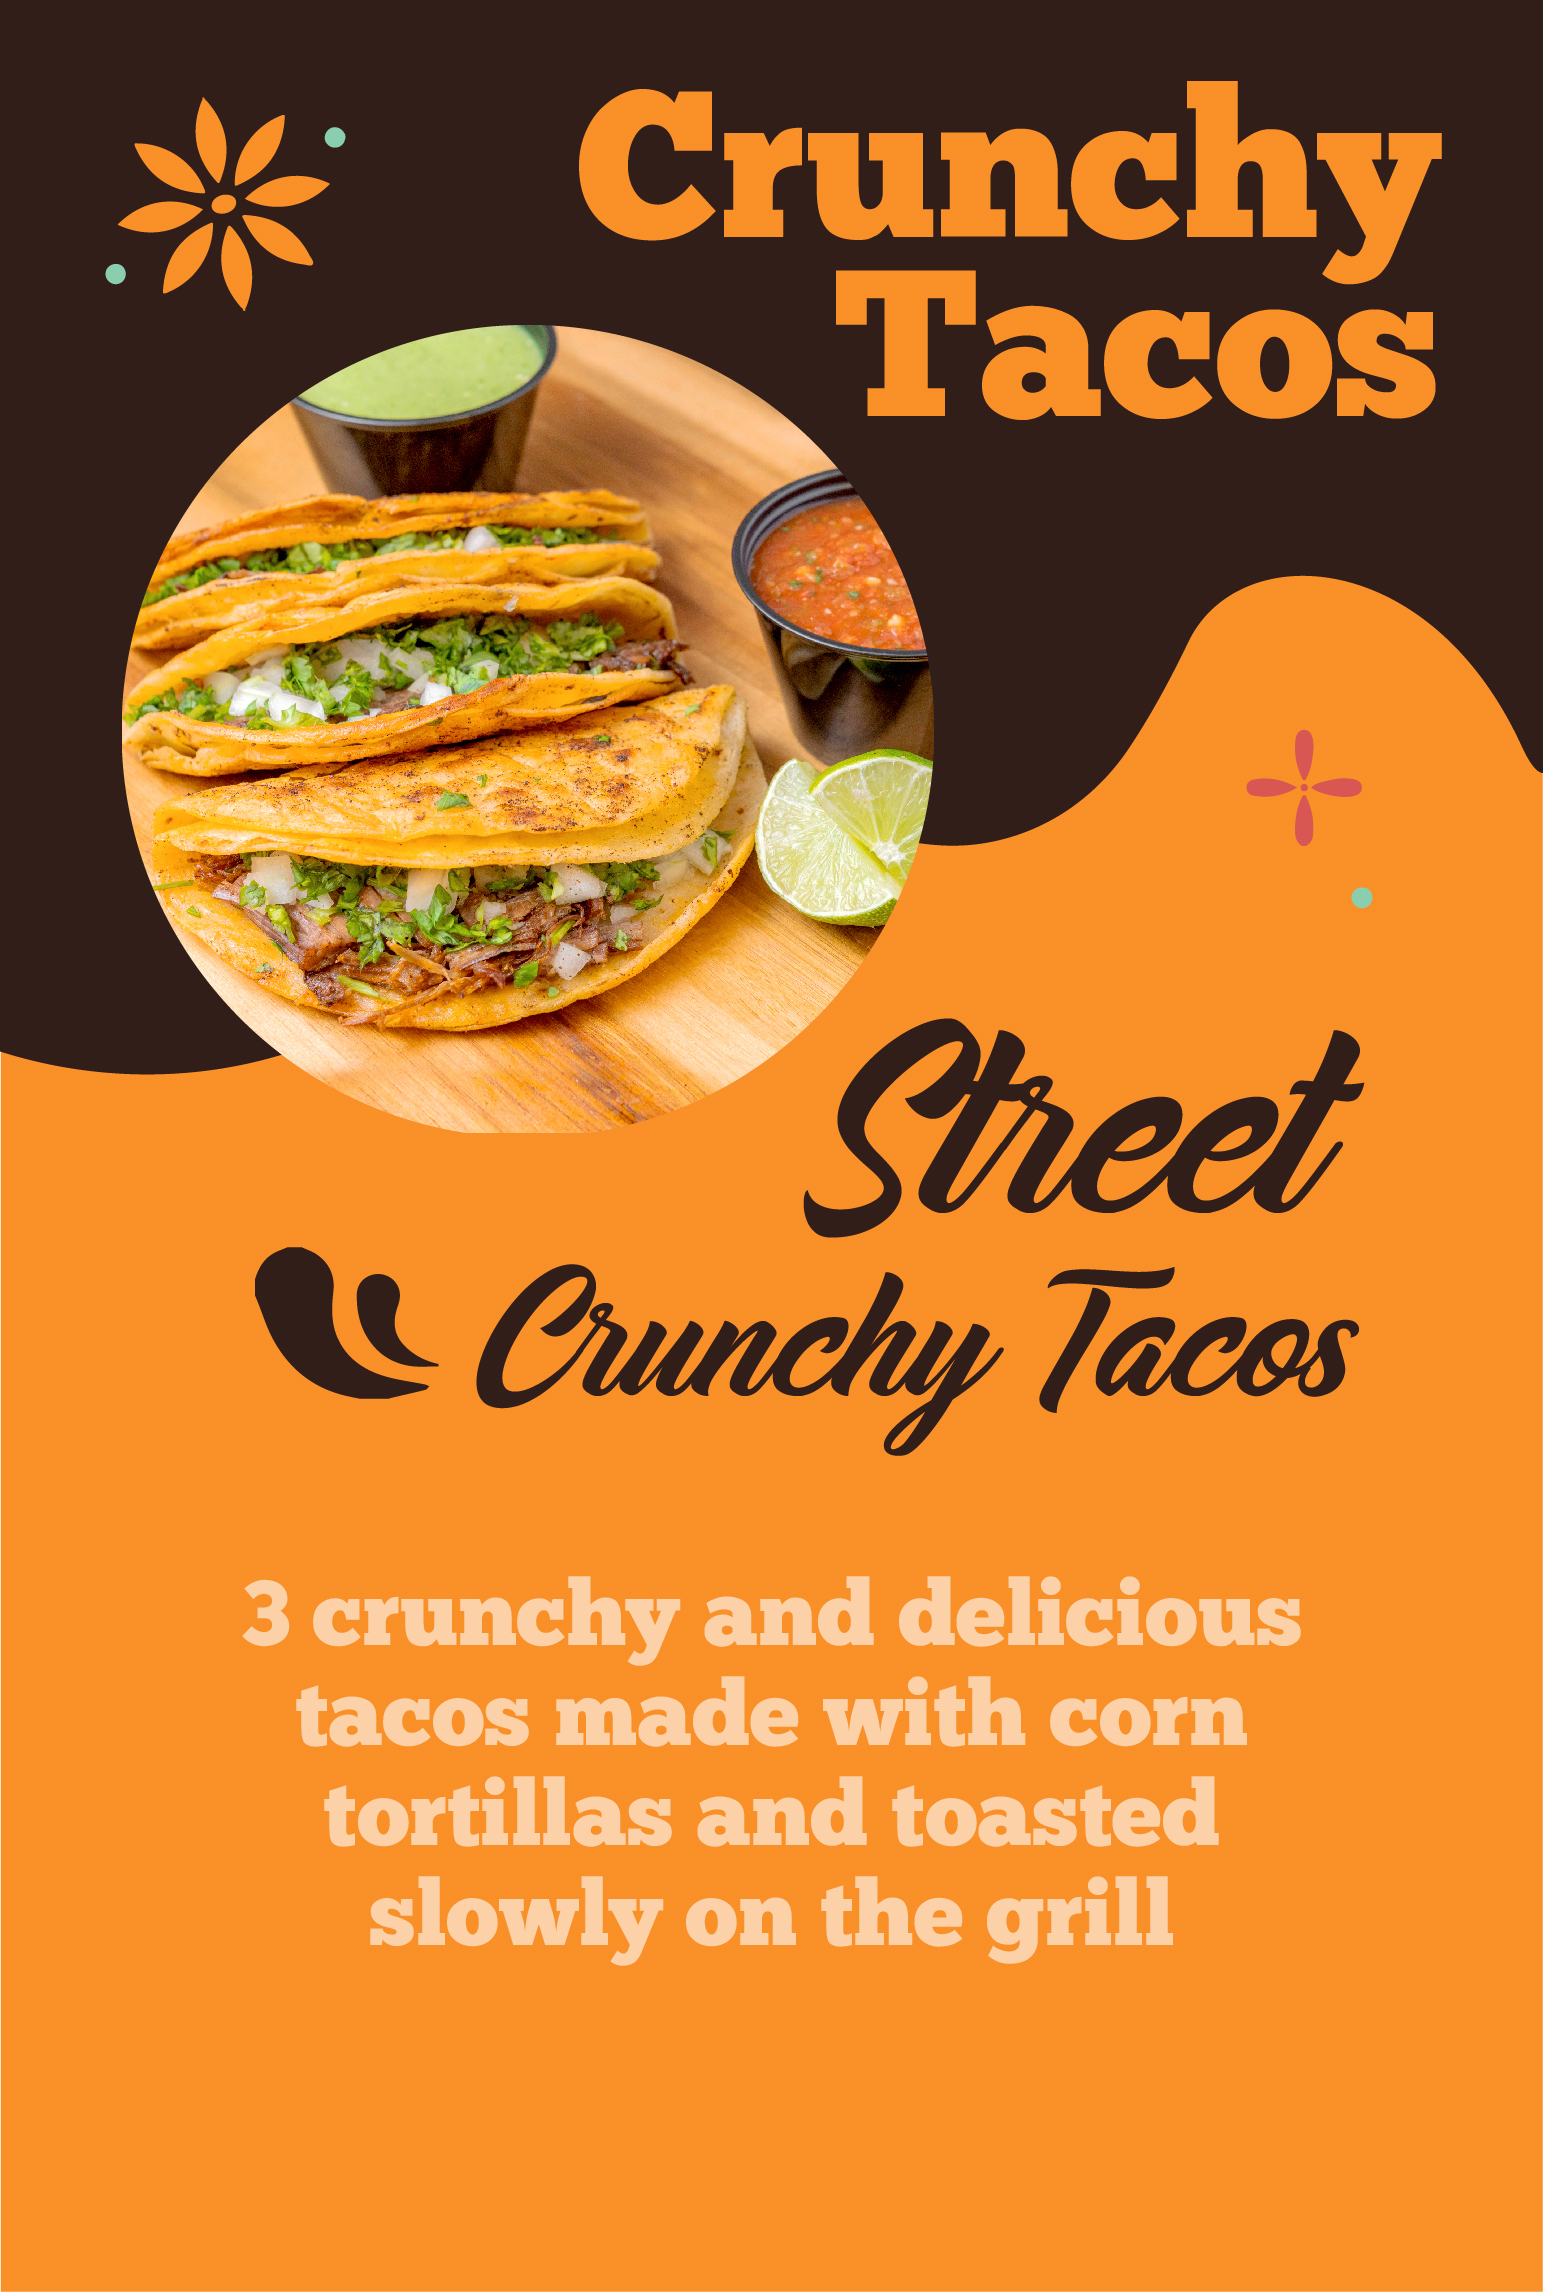 Menu Street Crunchy Tacos